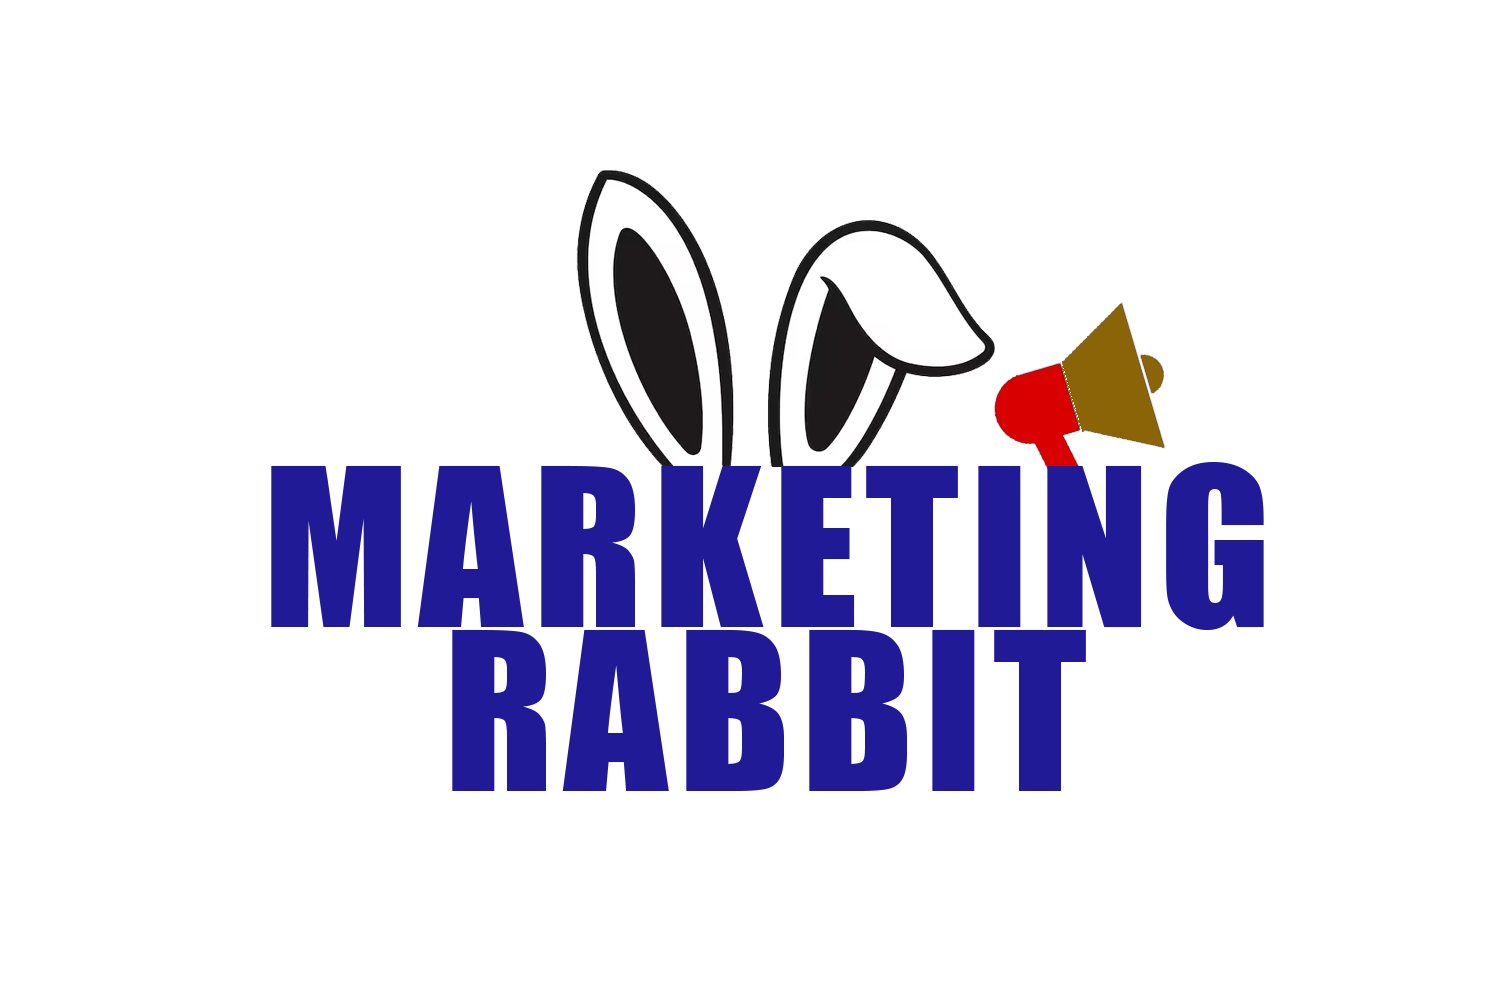 Marketing Rabbit